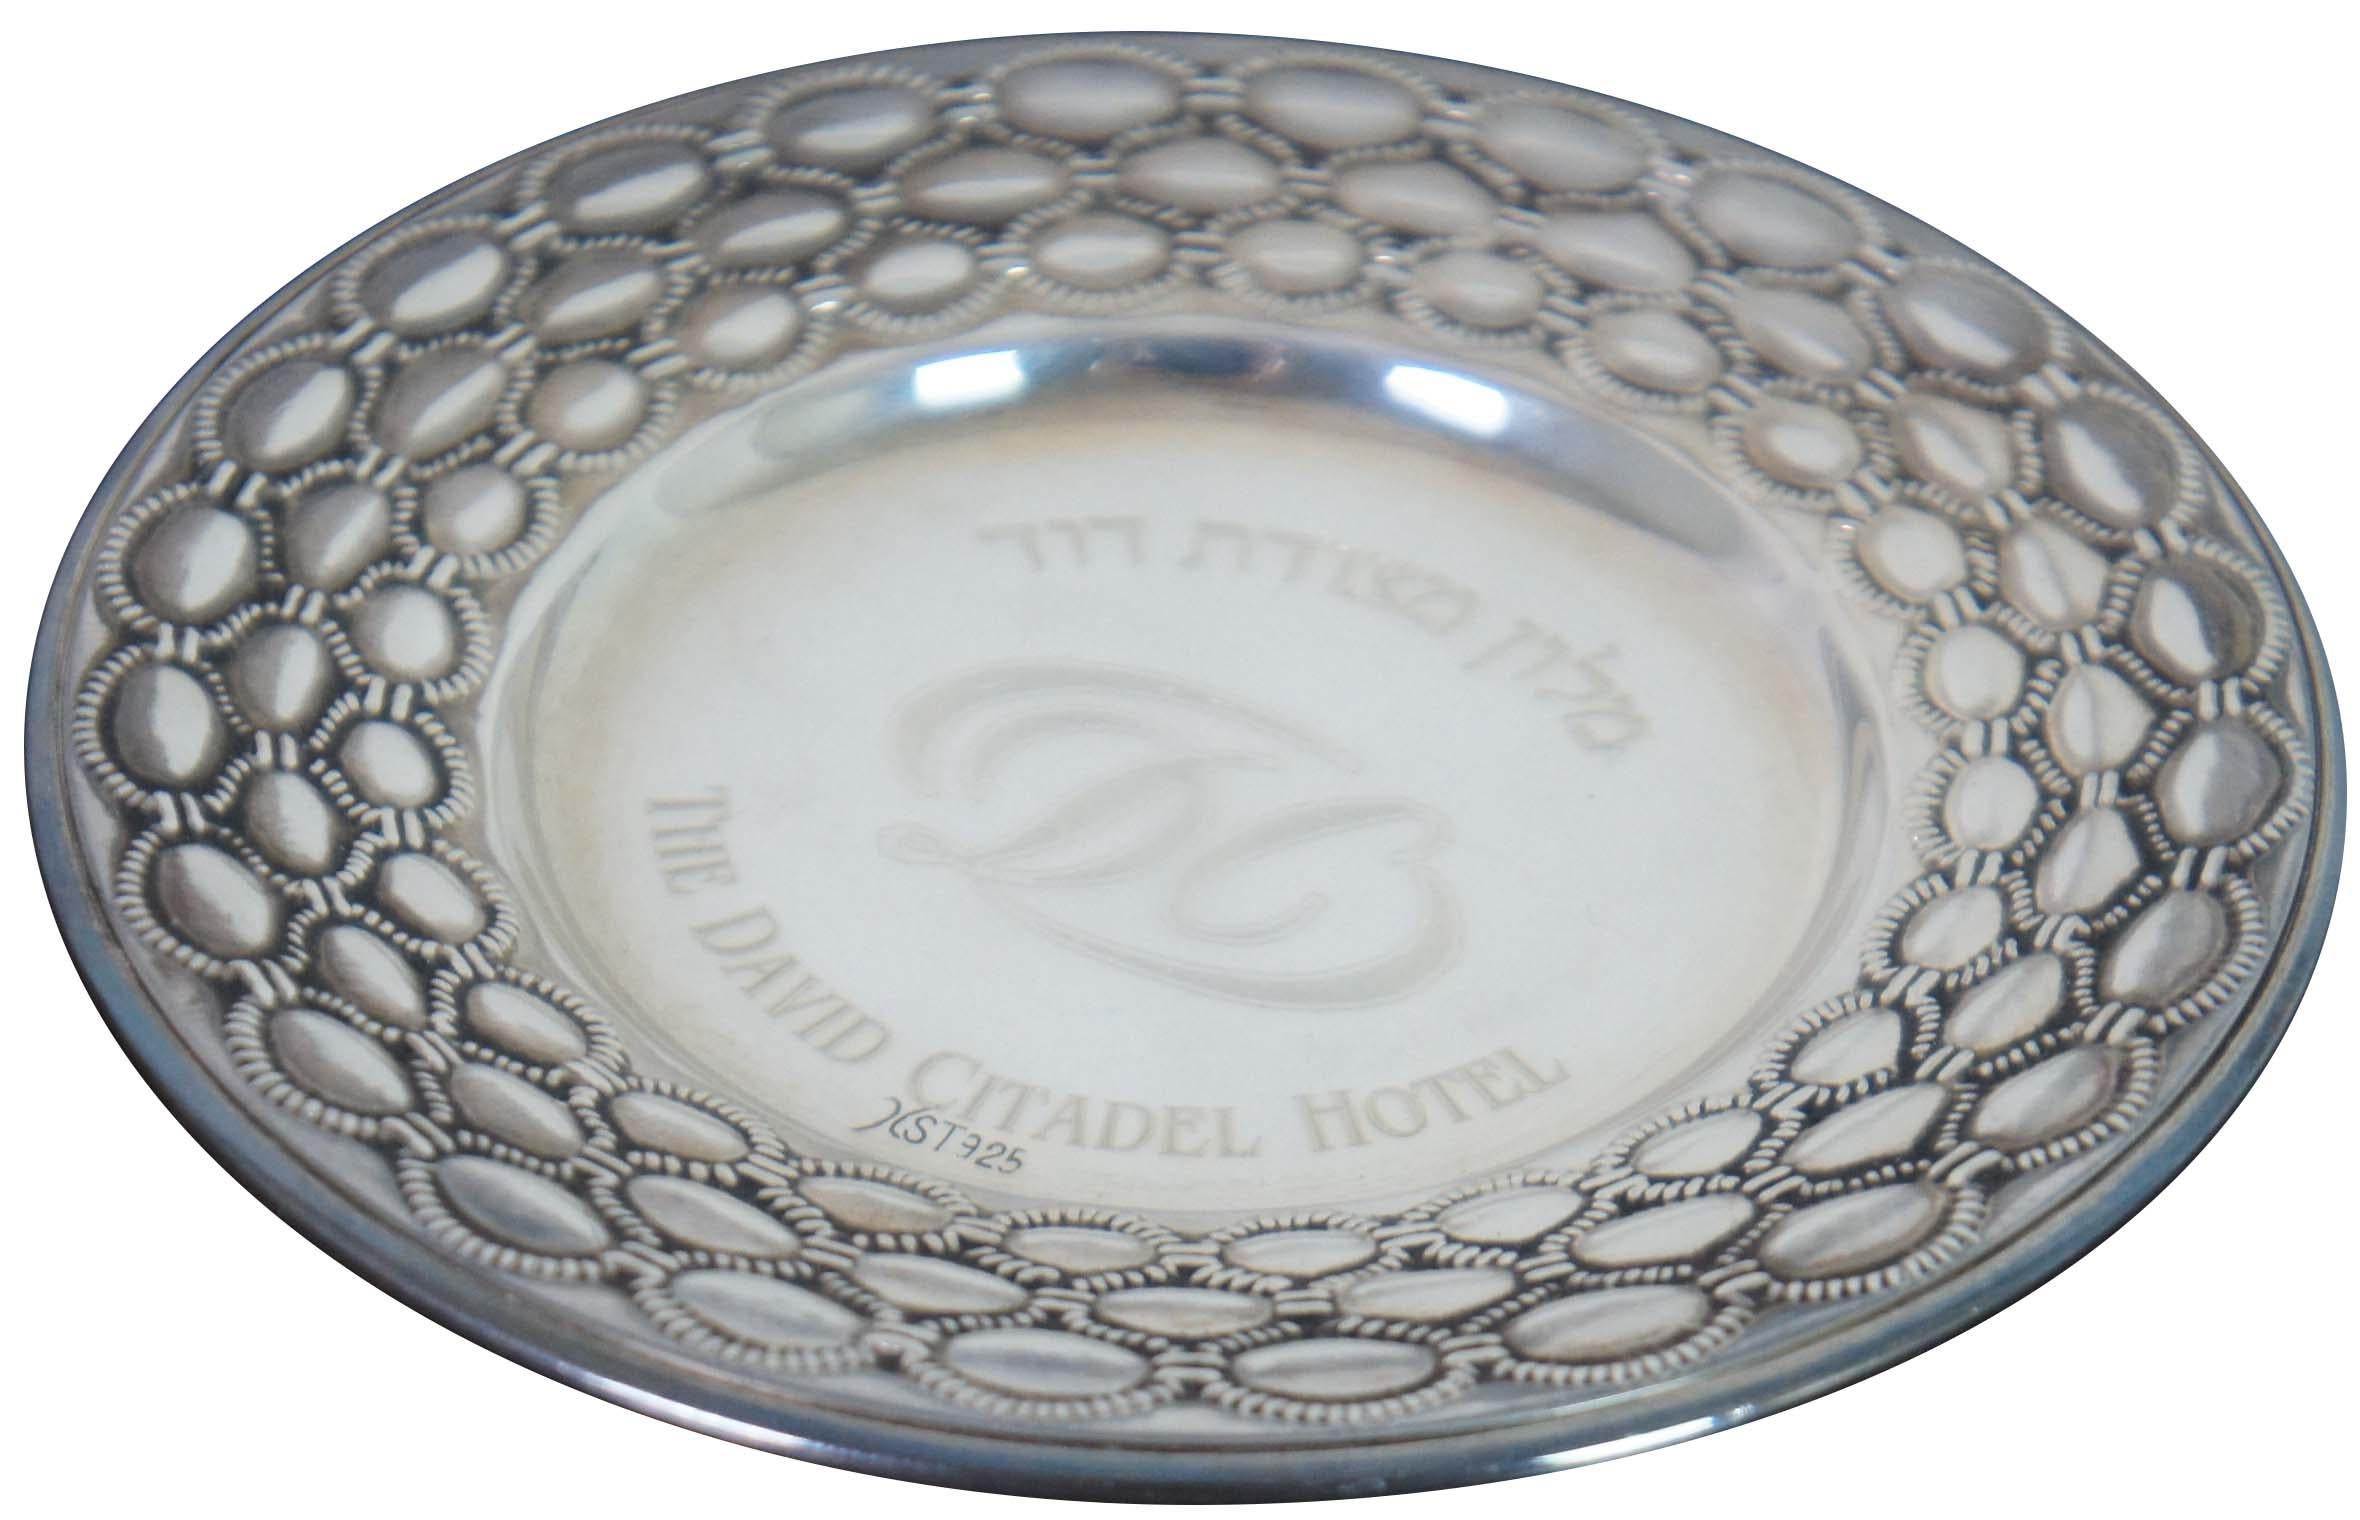 Vieux plat à bijoux ou petite assiette en argent sterling 925 de l'hôtel David Citadel de Jérusalem, avec un motif perlé décoratif autour du bord extérieur.

4